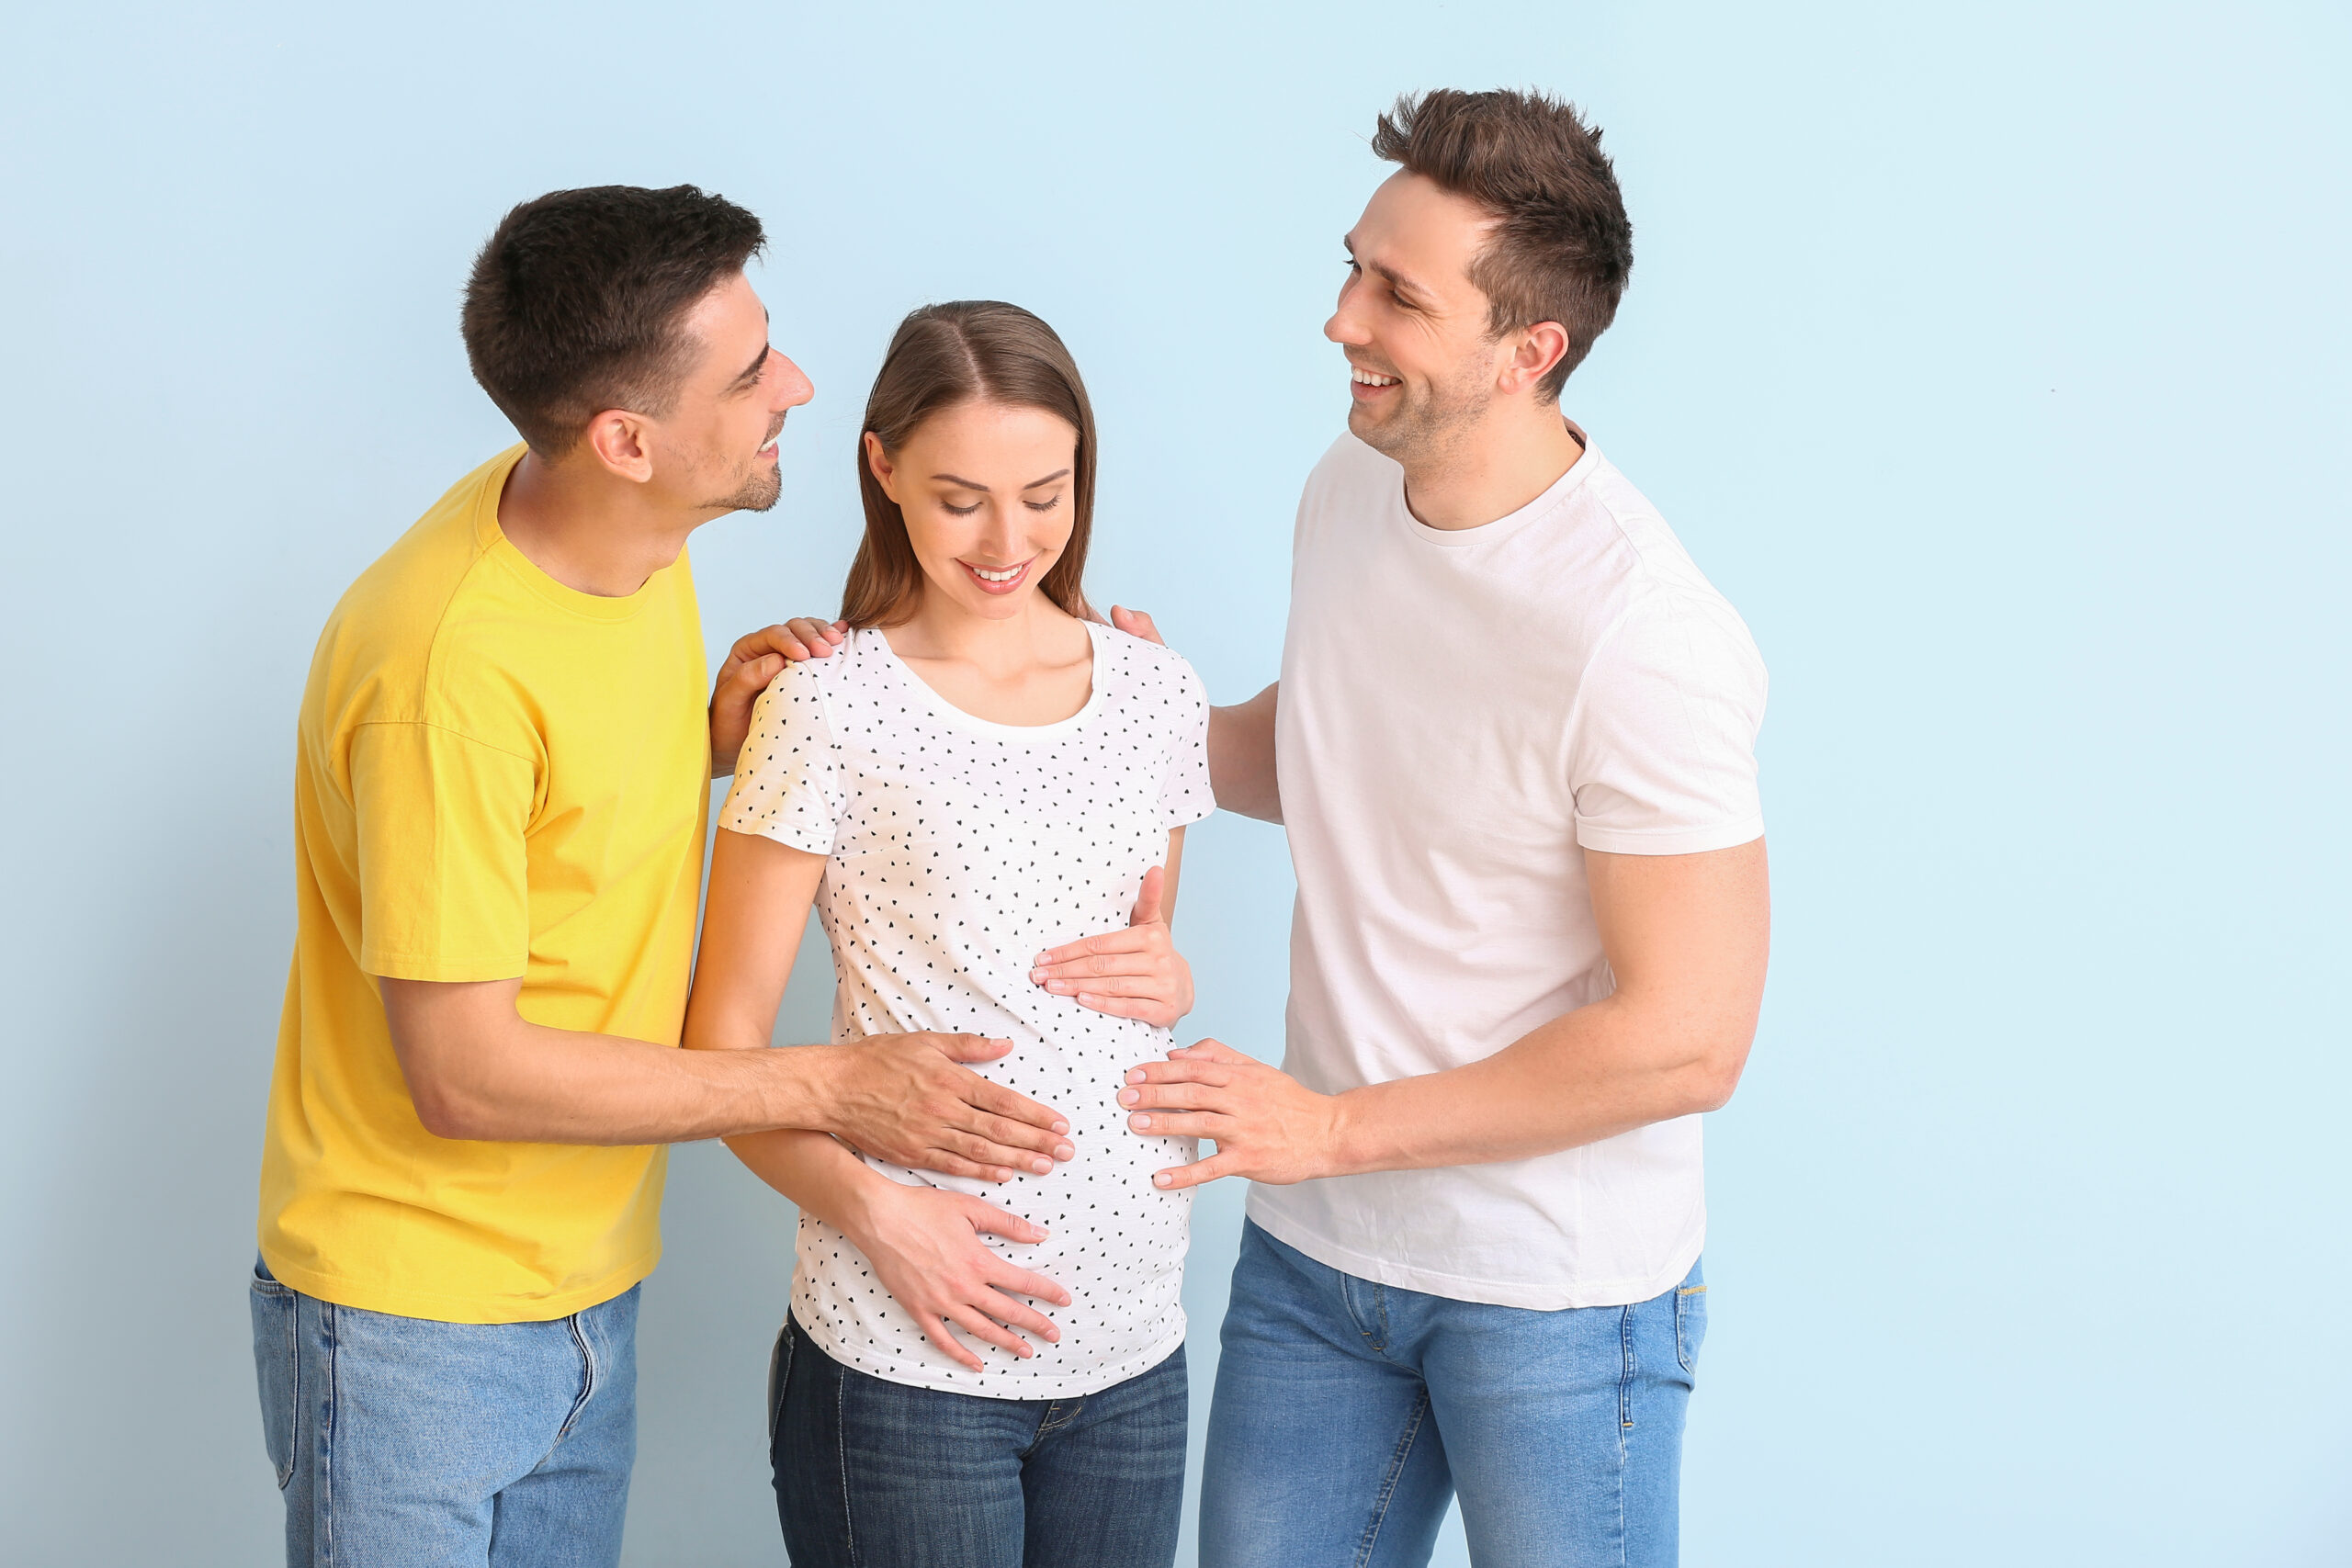 Zwei Männer und eine schwangere Frau lächeln zusammen, die Hände auf ihrem Bauch, und schlagen eine Leihmutterschaftsvereinbarung für LGBTQ-Eltern vor.